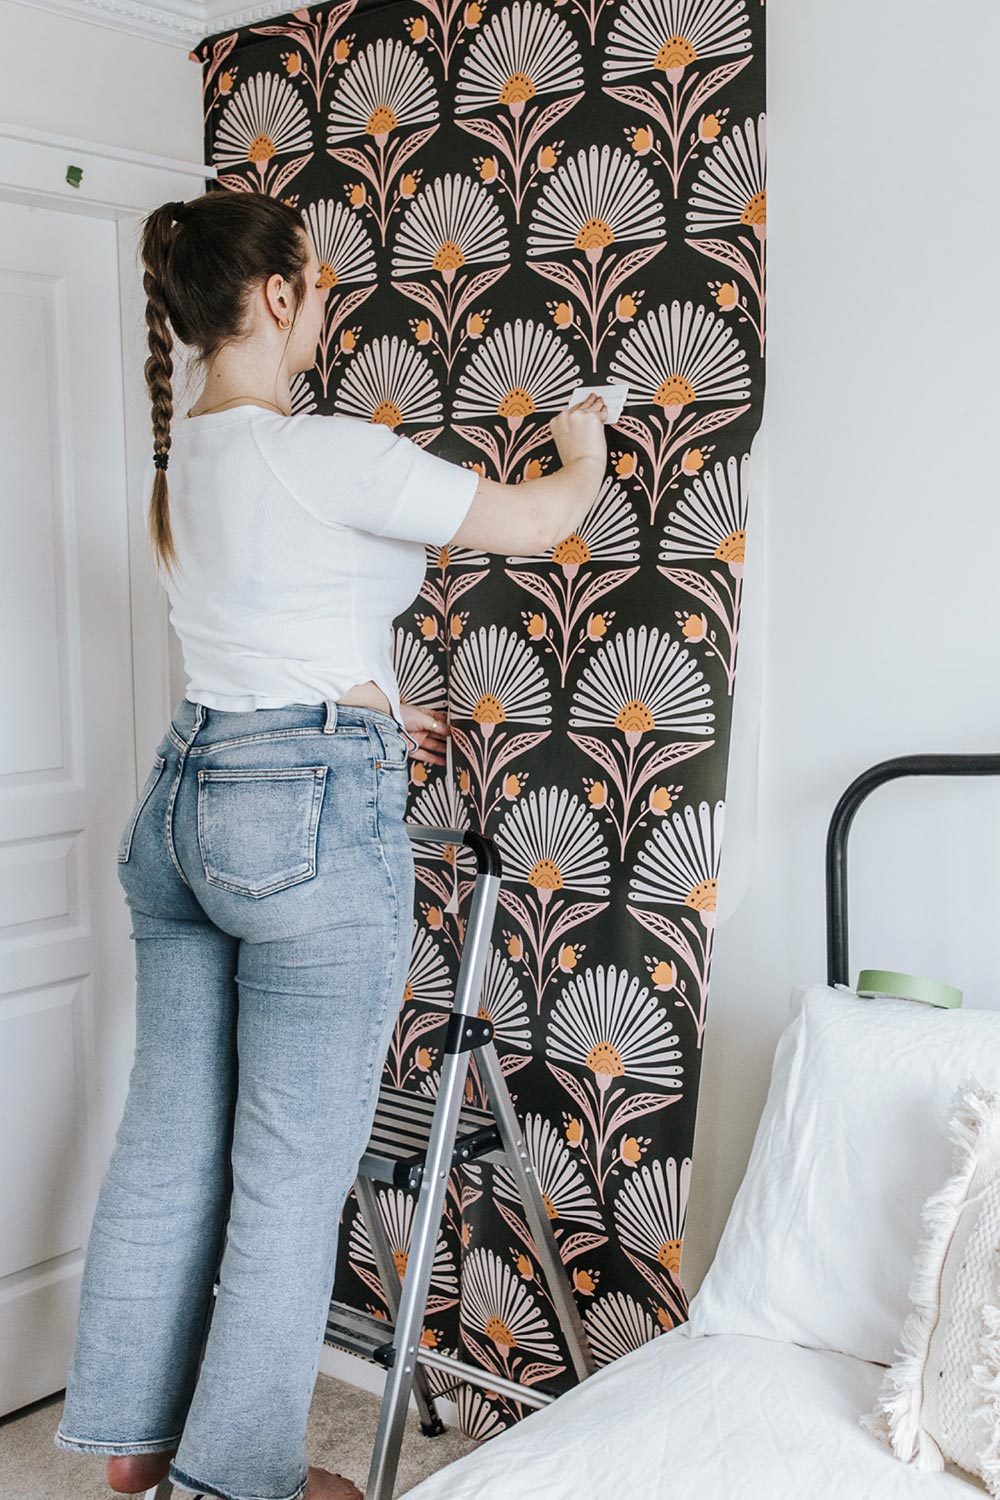 Halli installing Flourish Wallpaper in bedroom.